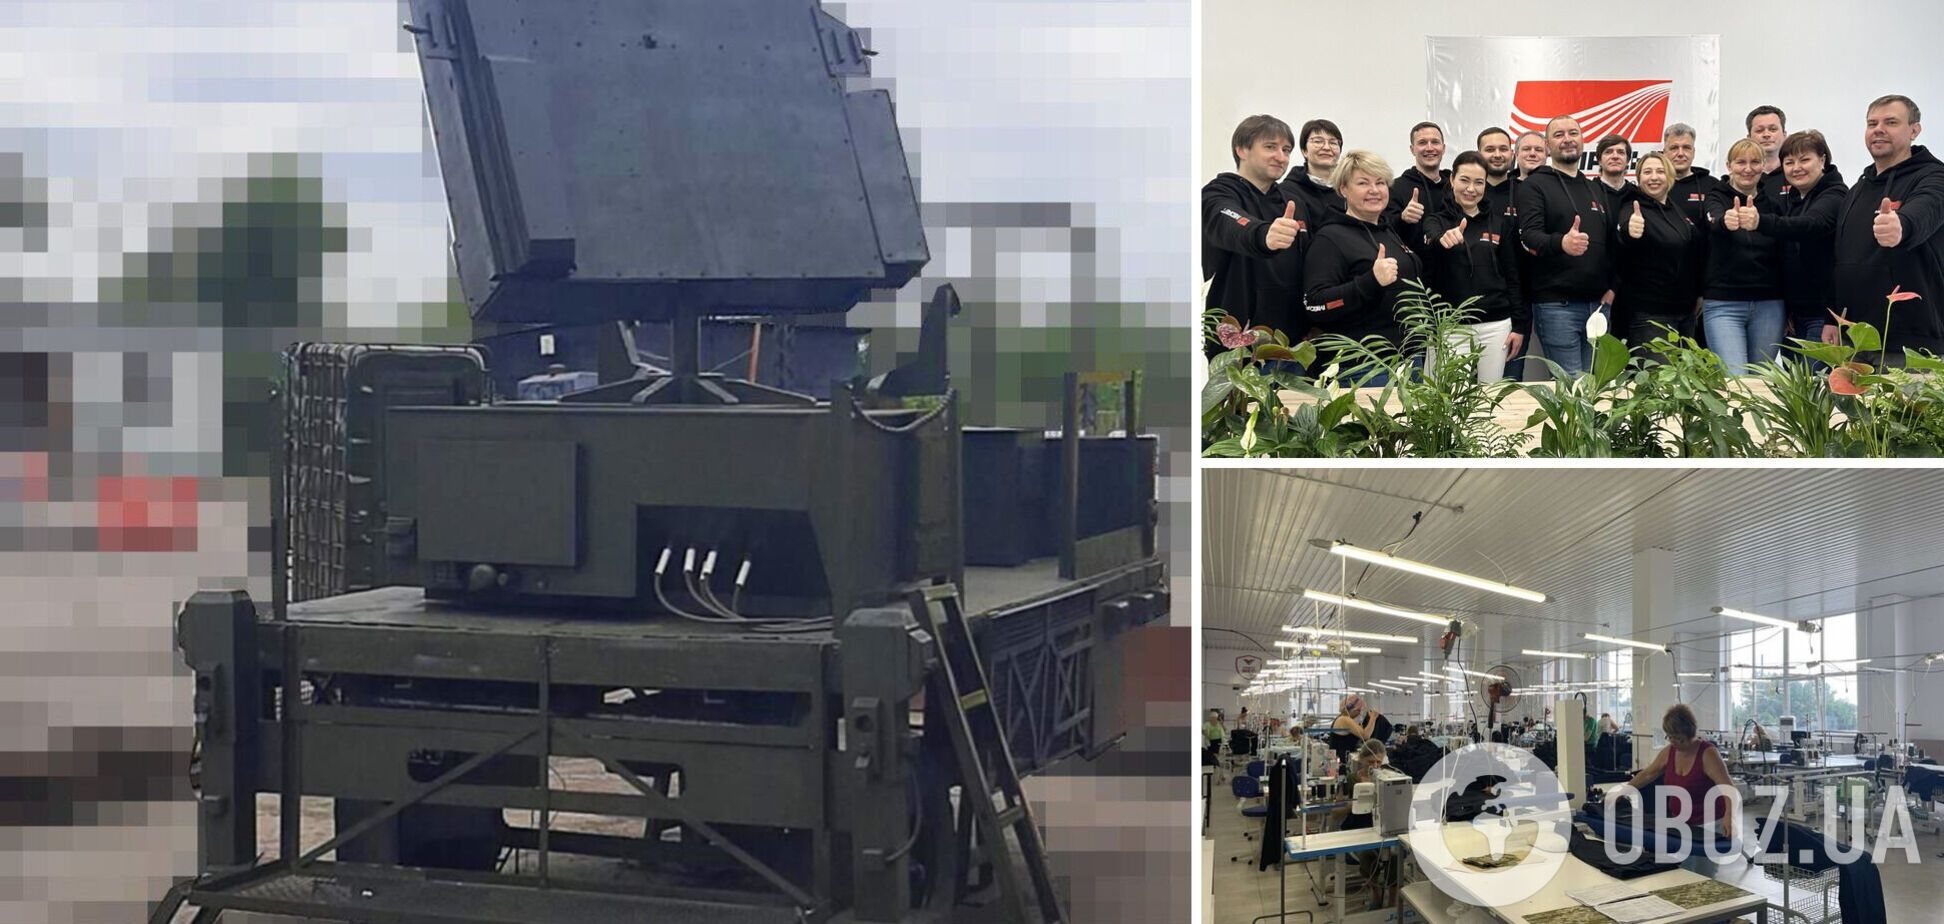 Поражающие военные изобретения украинского бизнеса